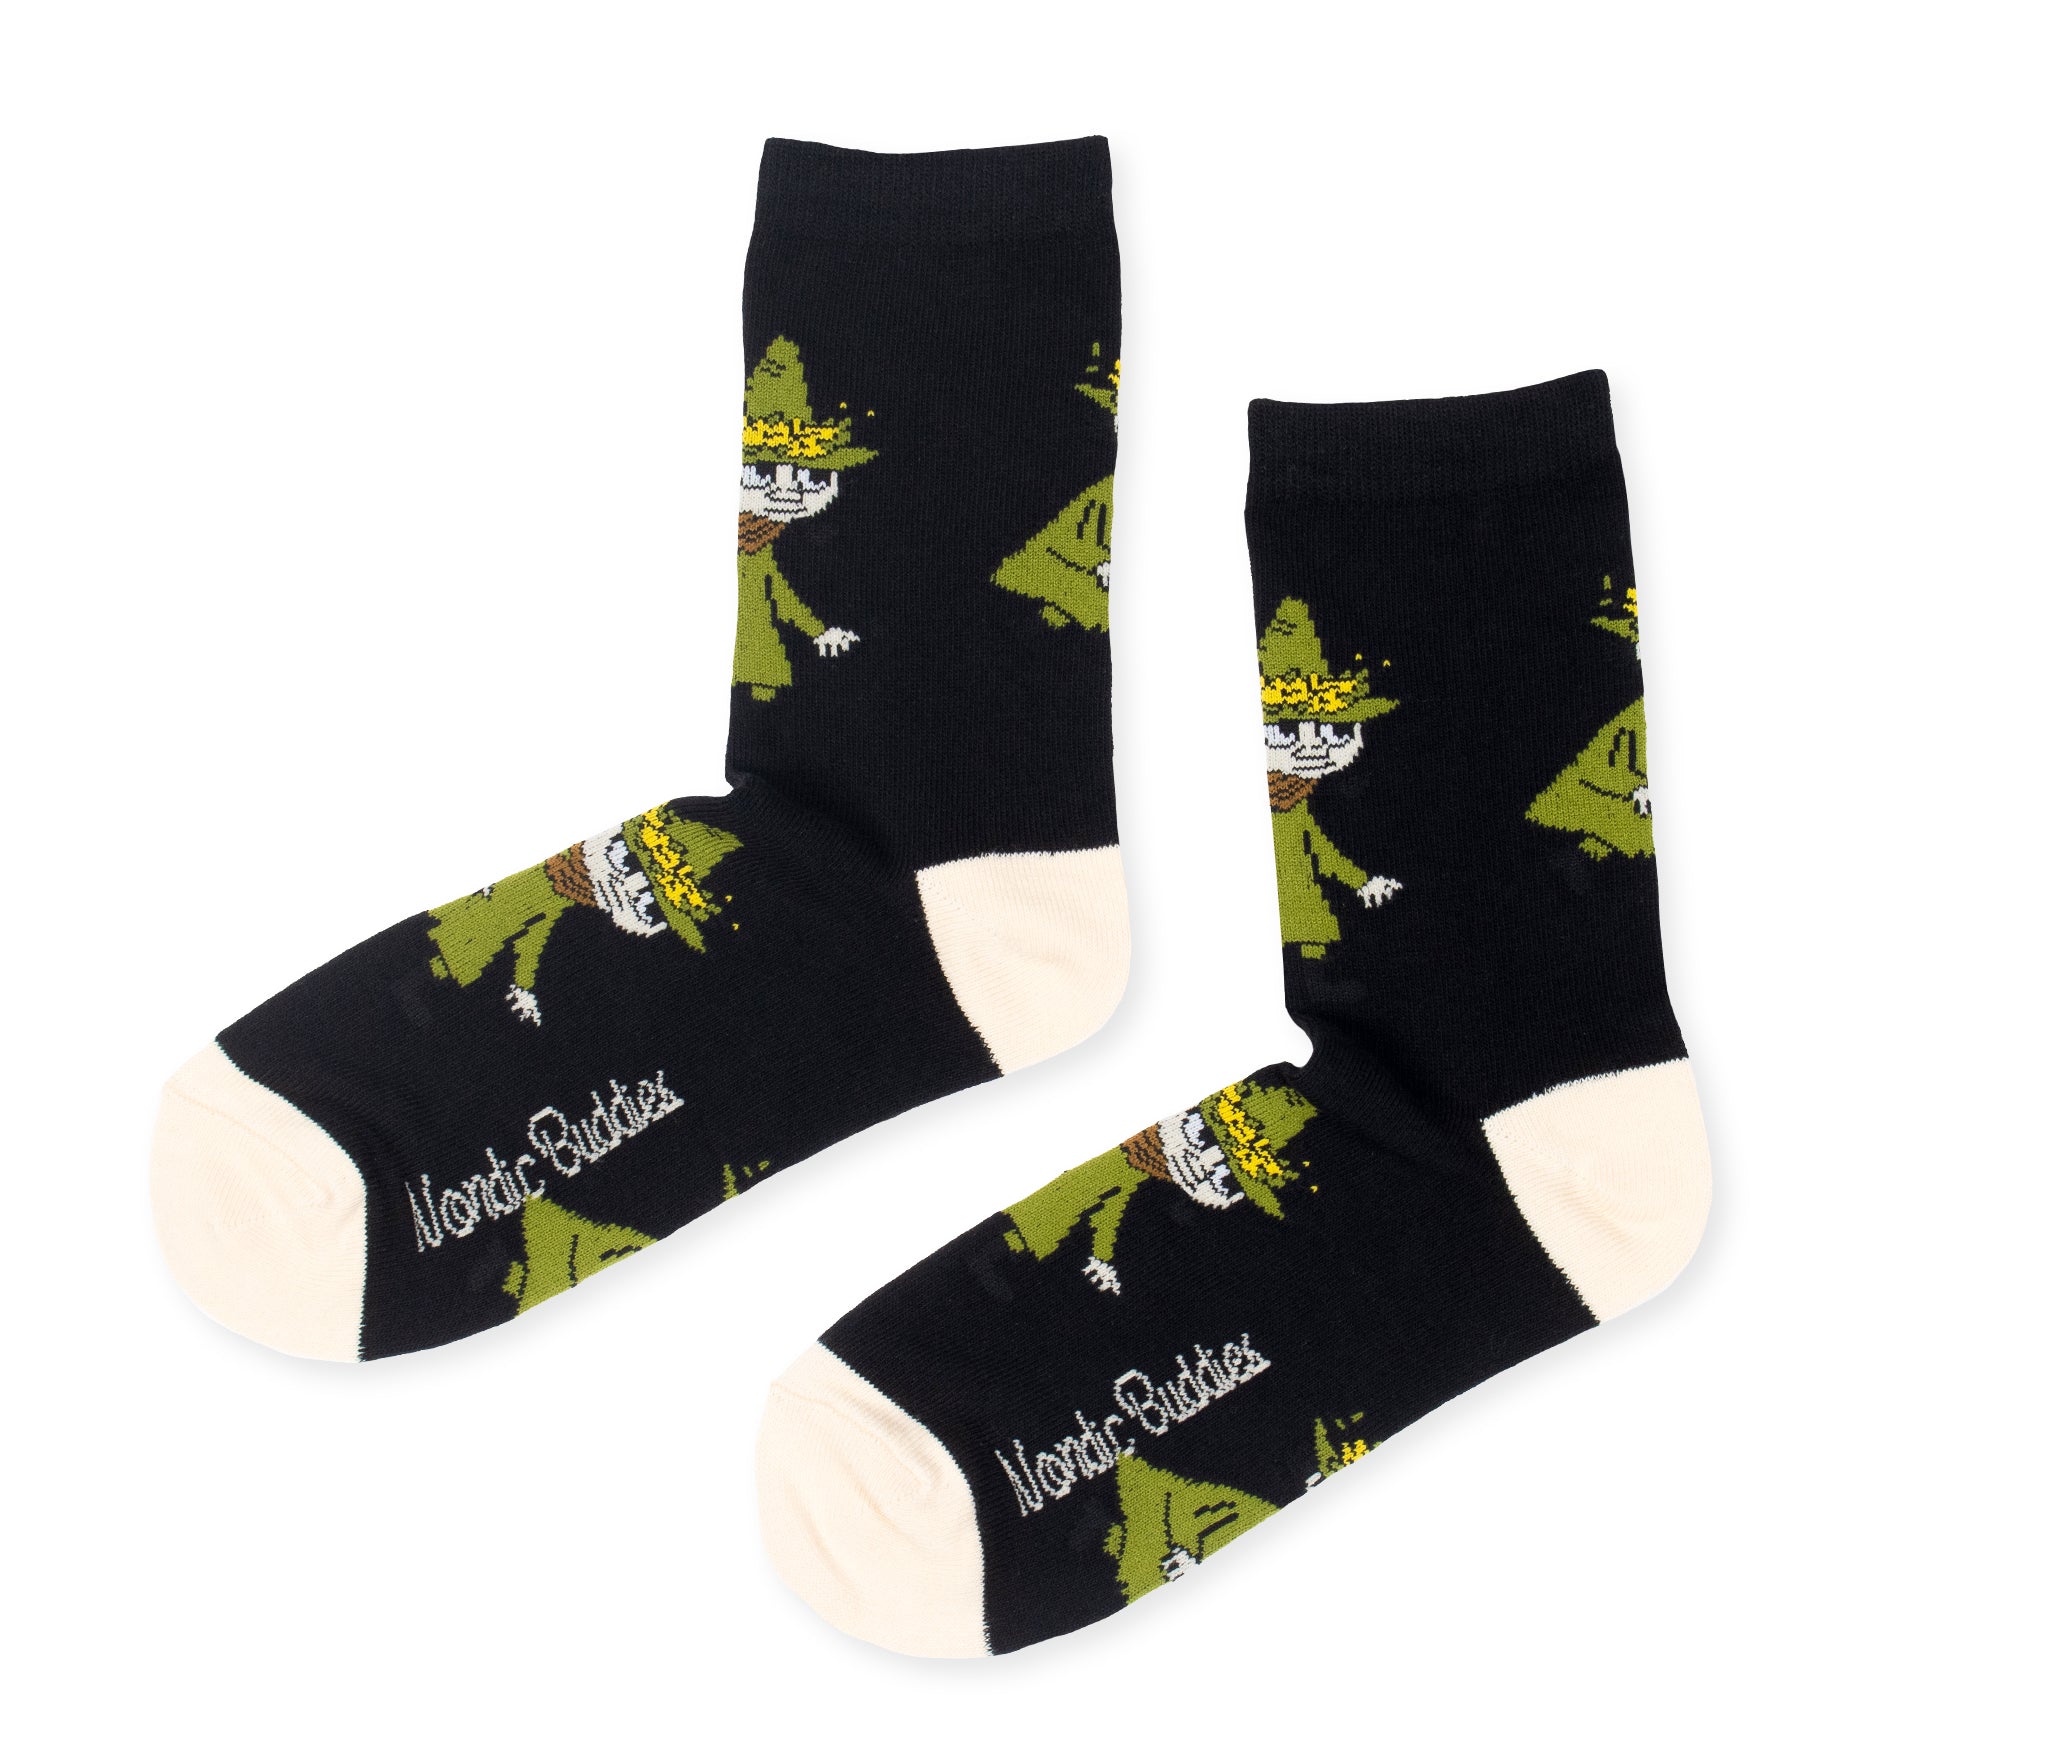 Snufkin Adventure Ladies Socks - Black